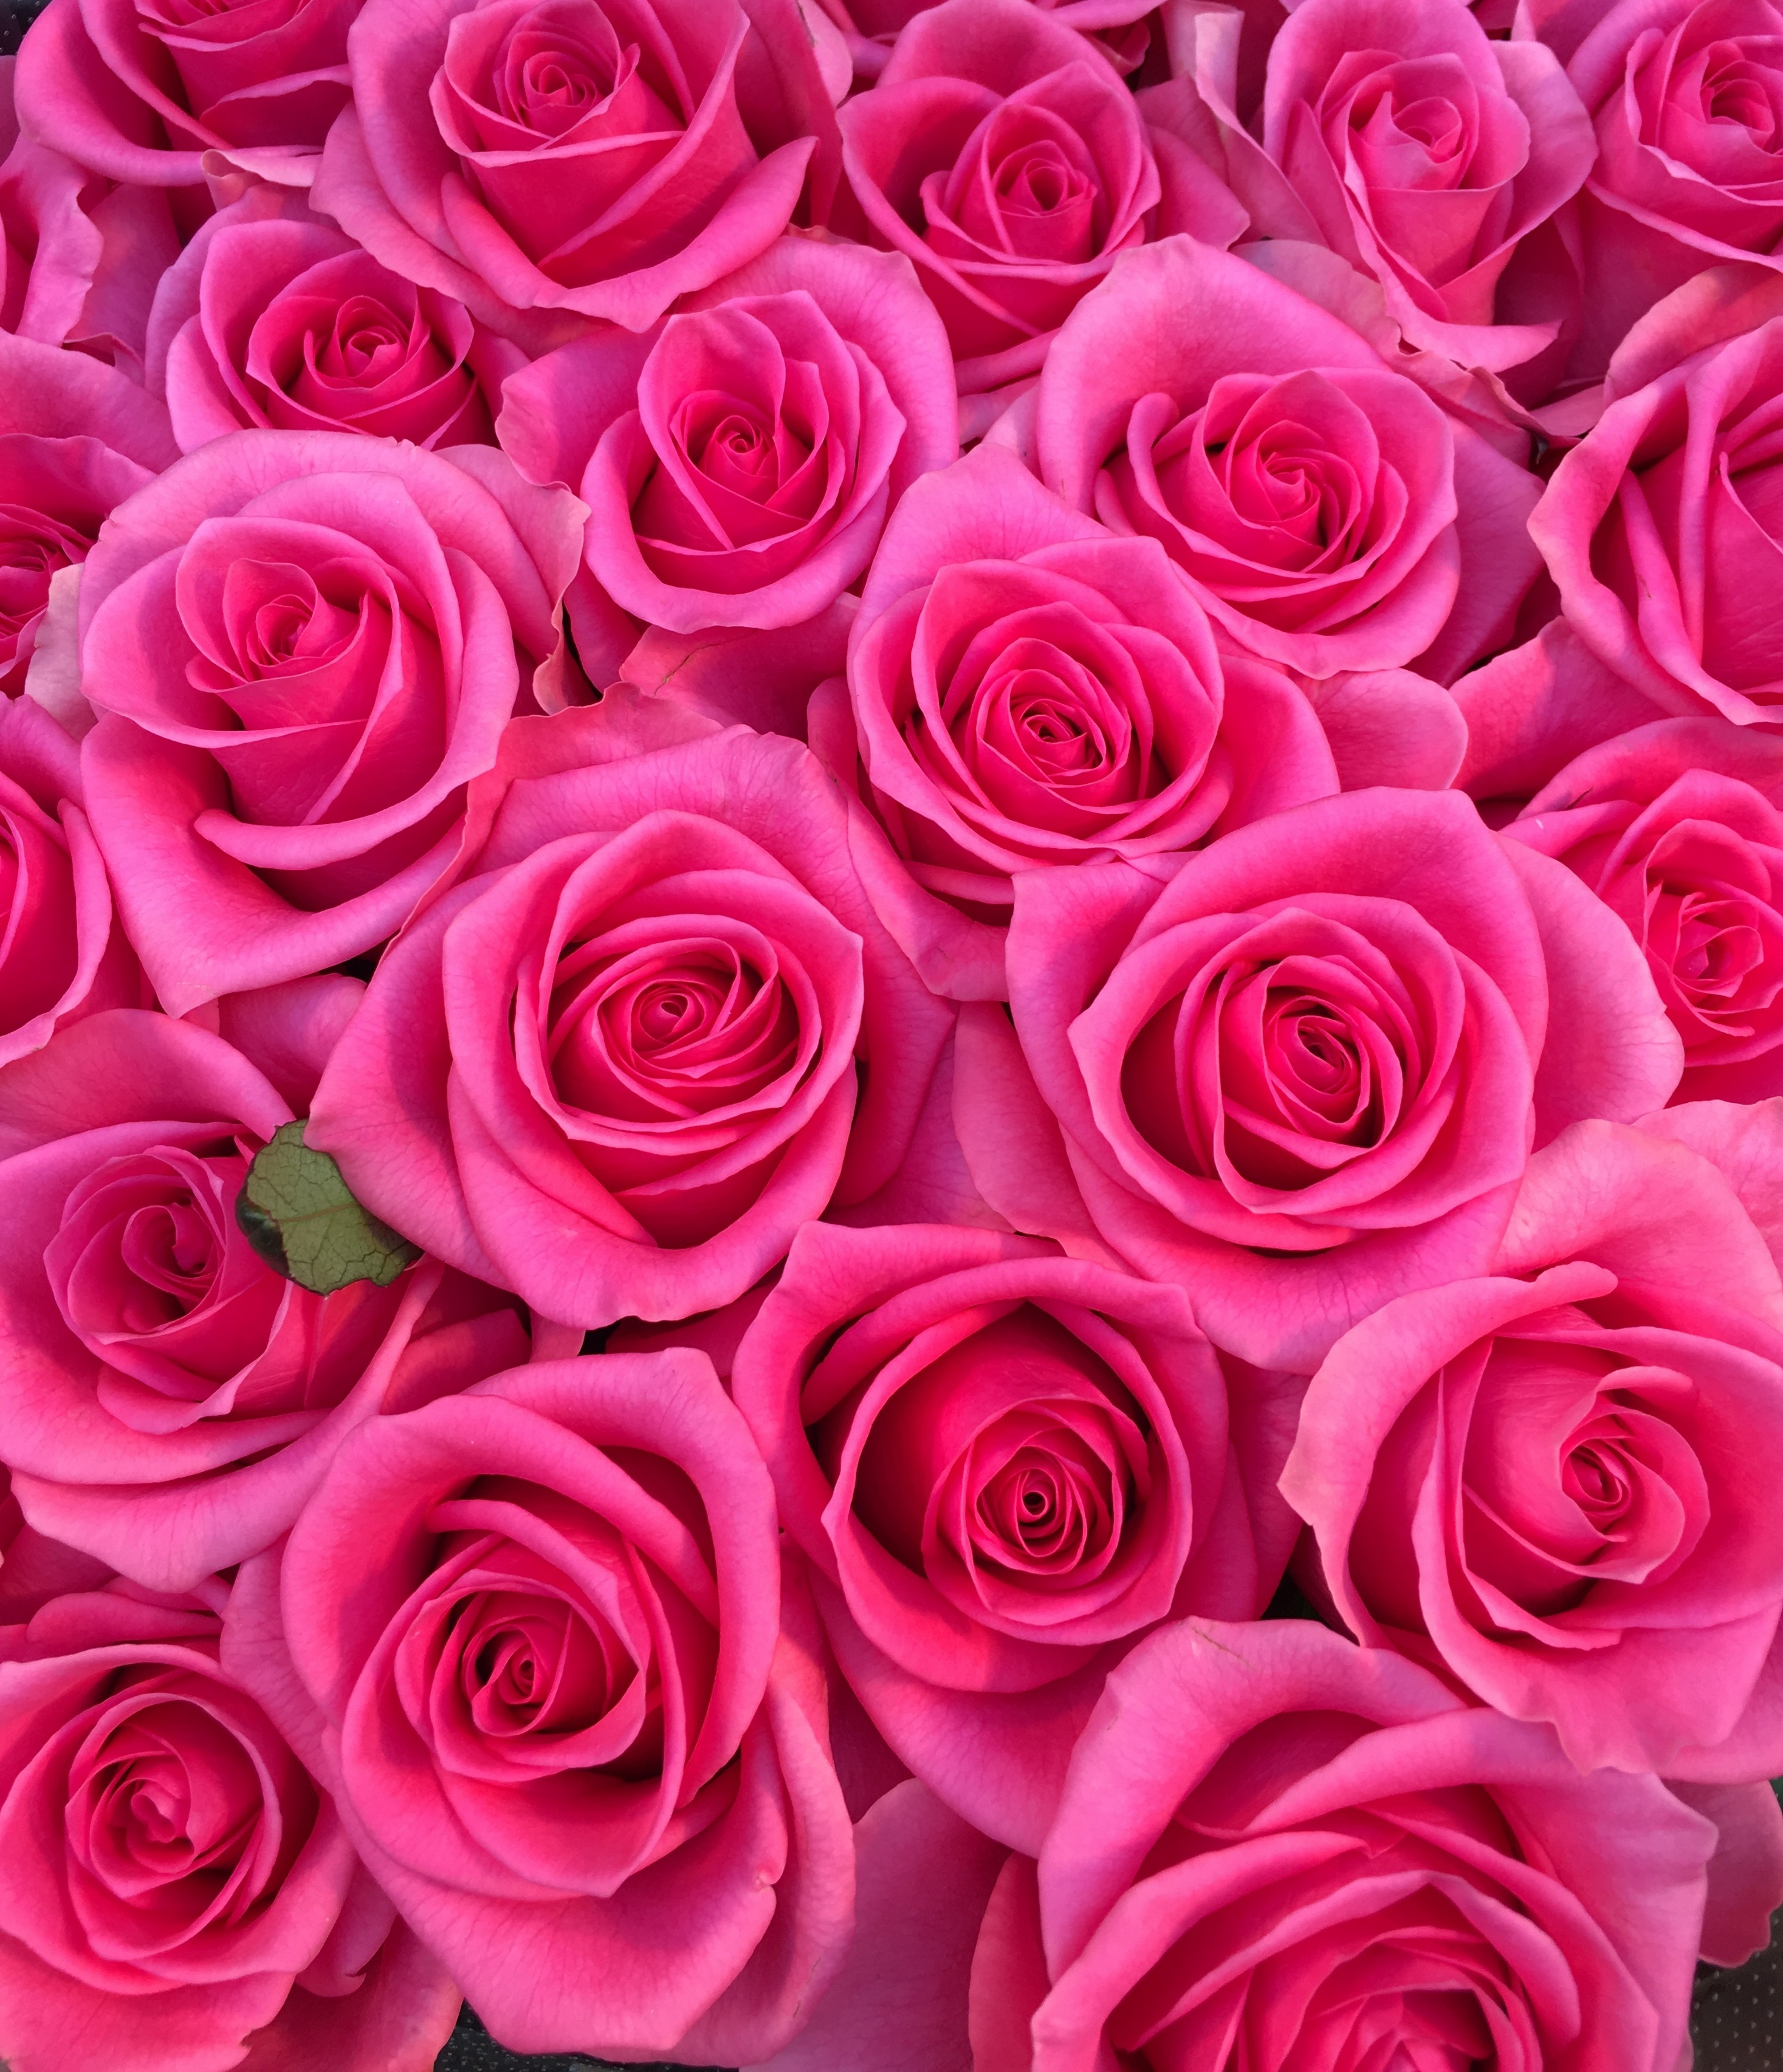 花屋 花家shinyoshi １００本バラ 中輪ピンクバラ プロポーズの花束 記念日の花束 結婚記念日の花束 特別な花束 １００本 １０８本 バラ ローズ 薔薇 Rose Rose Roses Roses